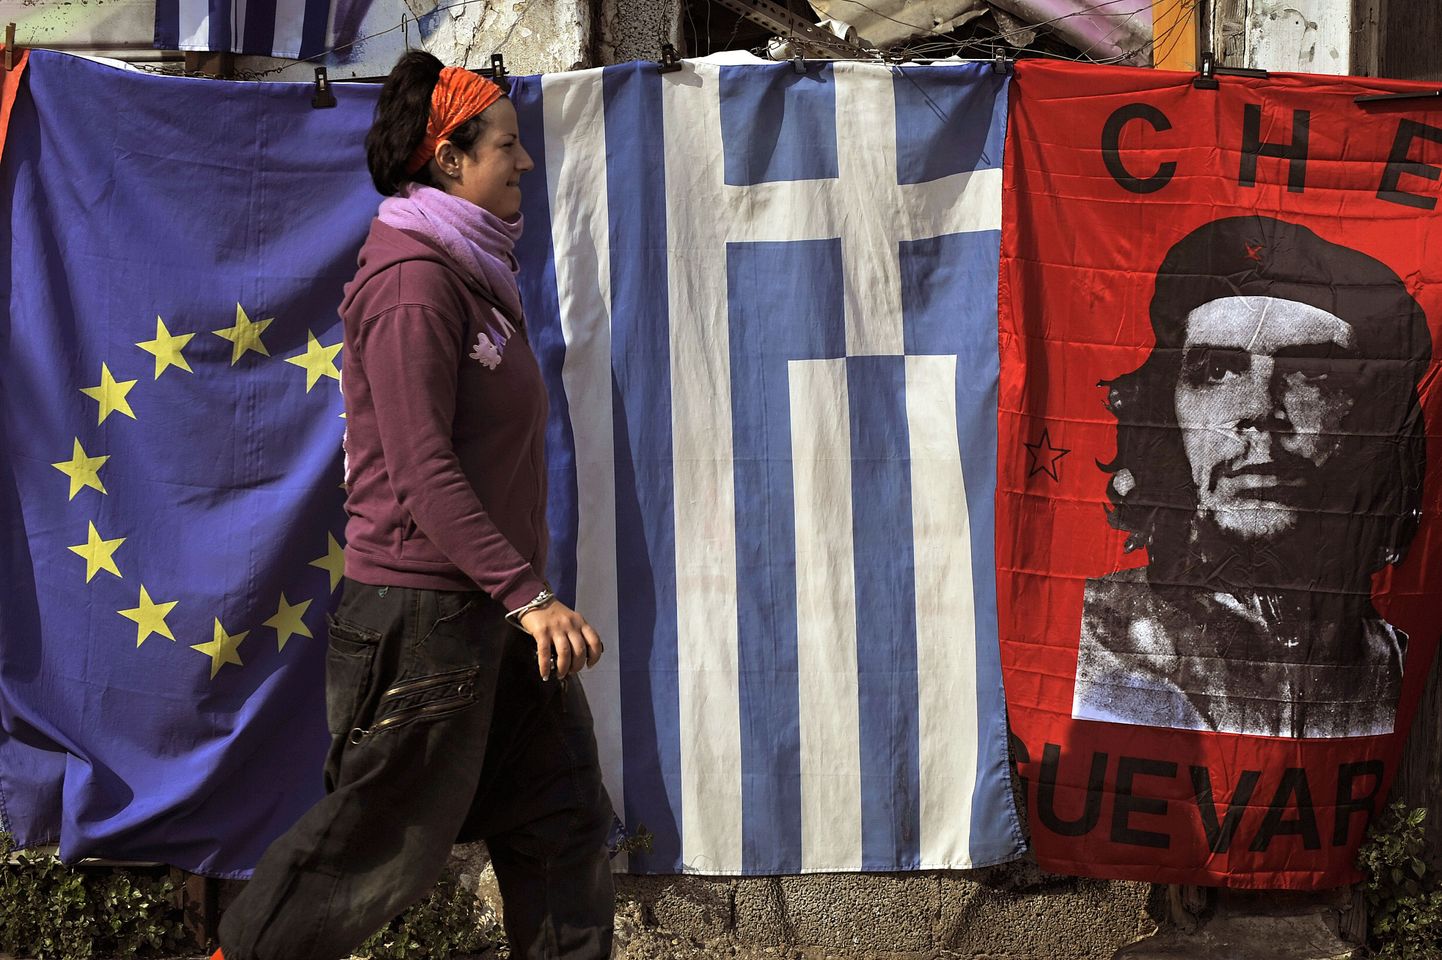 Euroopa Liidu, Kreeka ja Che Guevara (Ladina-Ameerika revolutsionäär) lipud Ateenas.